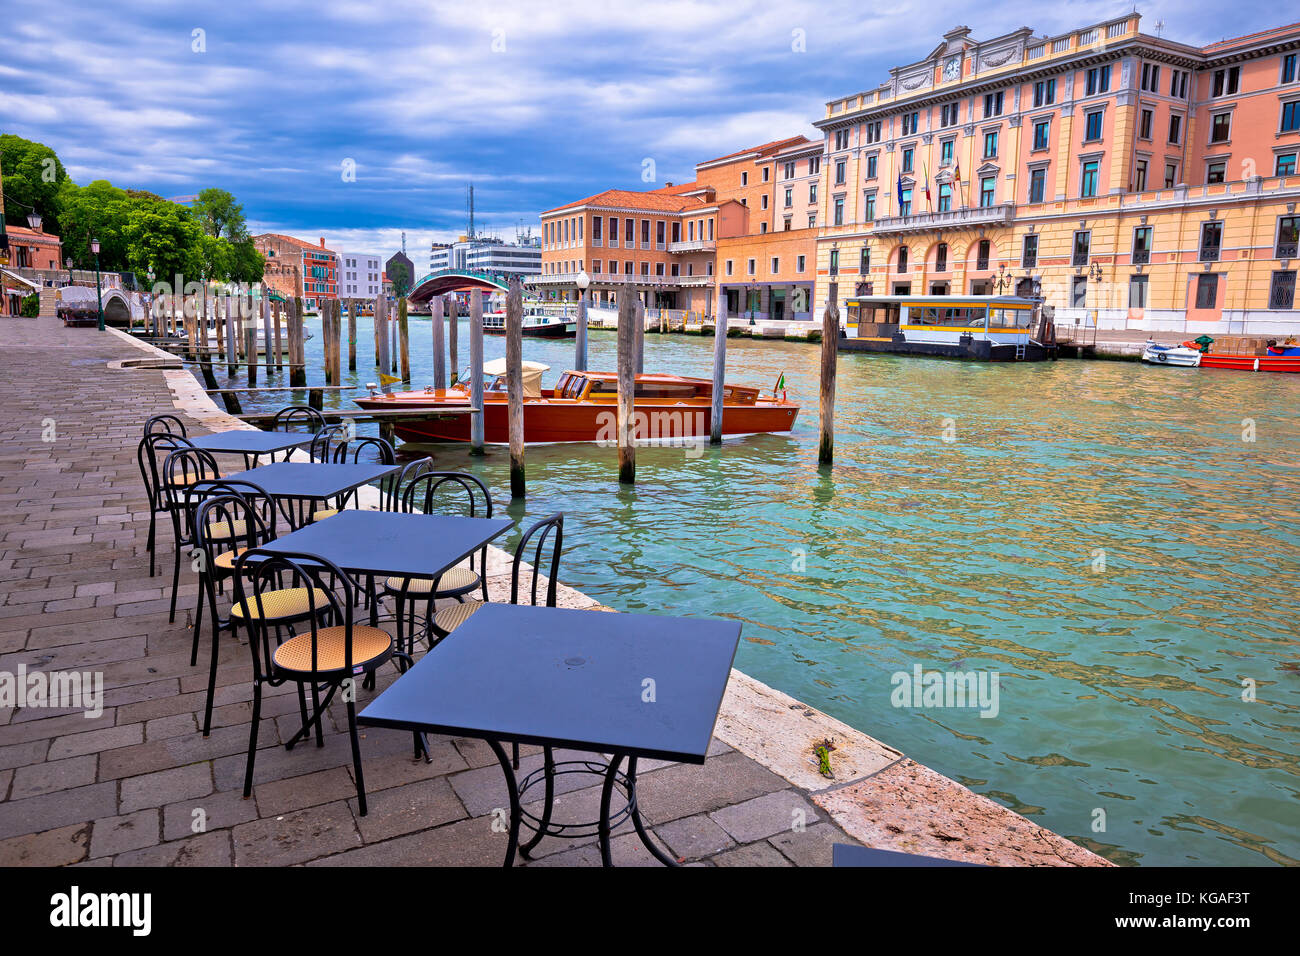 Vista del canal grande en Venecia, destino turístico en la región del Véneto, Italia Foto de stock